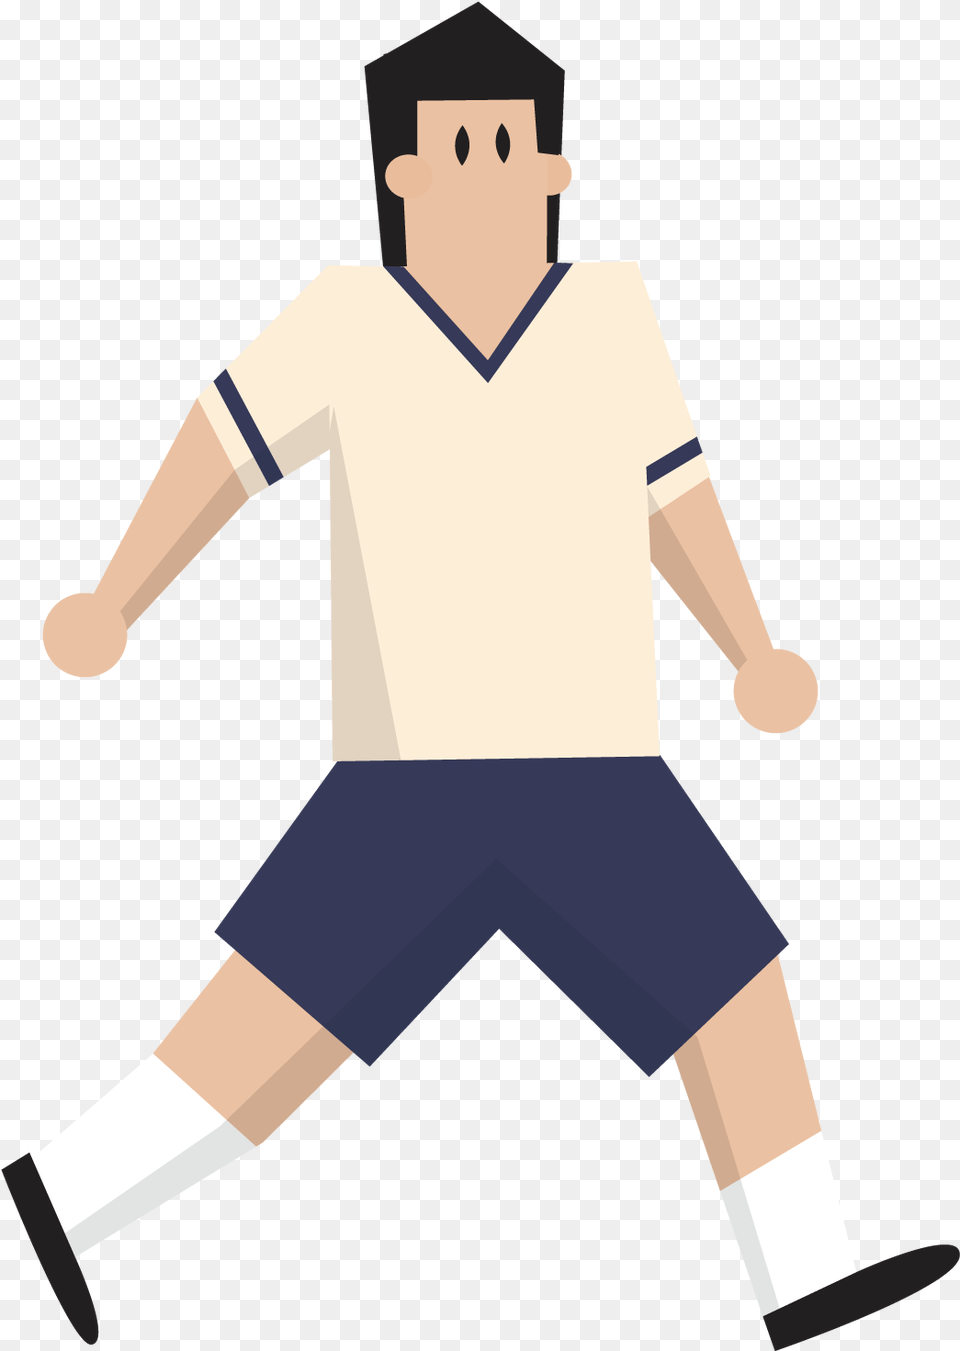 Football Referee Captain Tsubasa Football Full Illustration, People, Person, Walking, Baseball Free Png Download